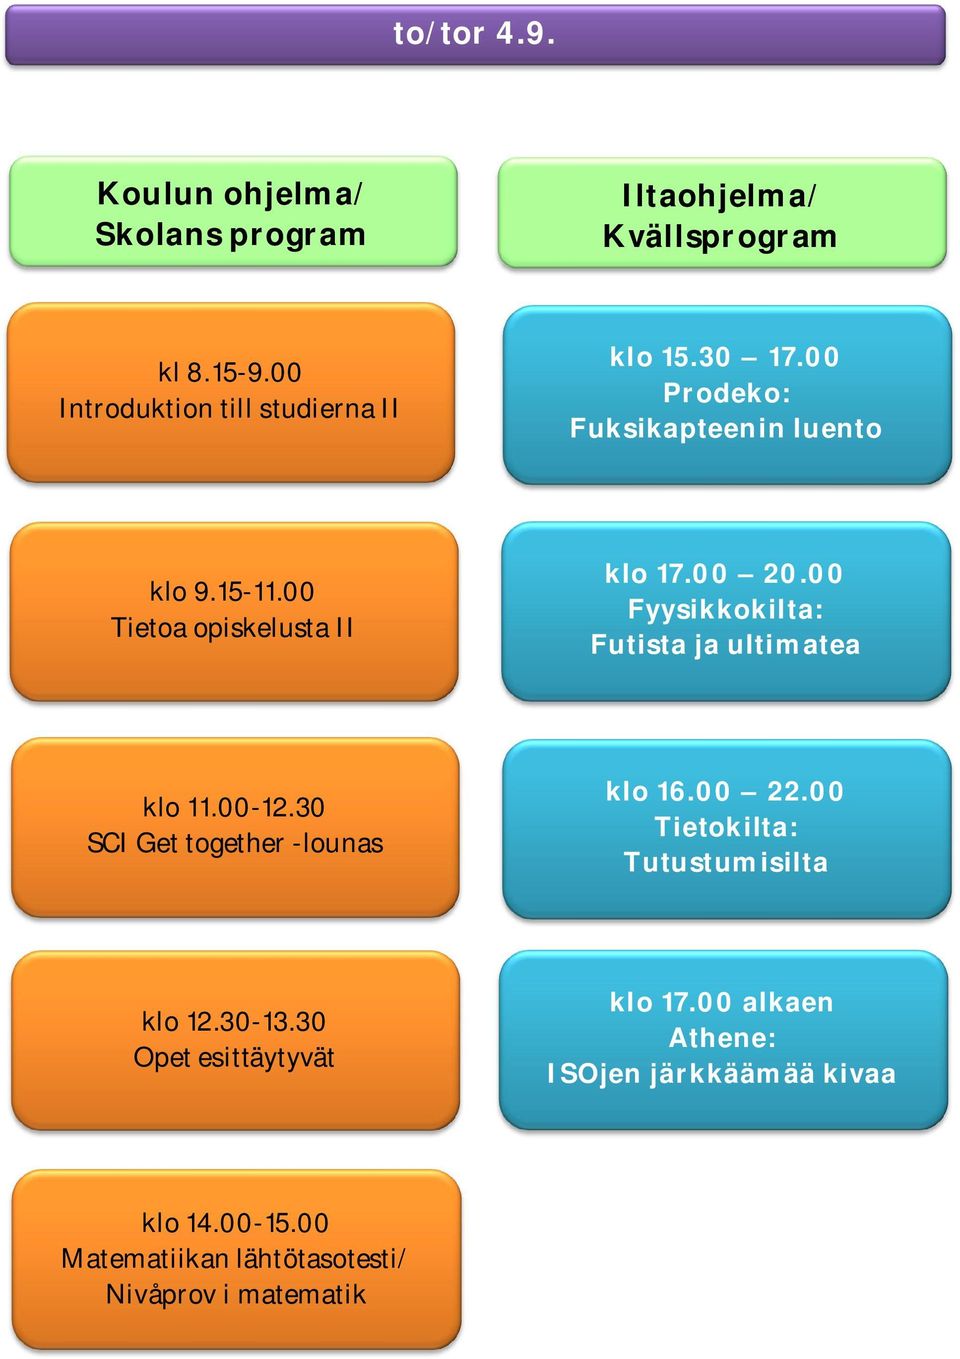 00 Tietoa opiskelusta II klo 17.00 20.00 Fyysikkokilta: Futista ja ultimatea klo 11.00-12.